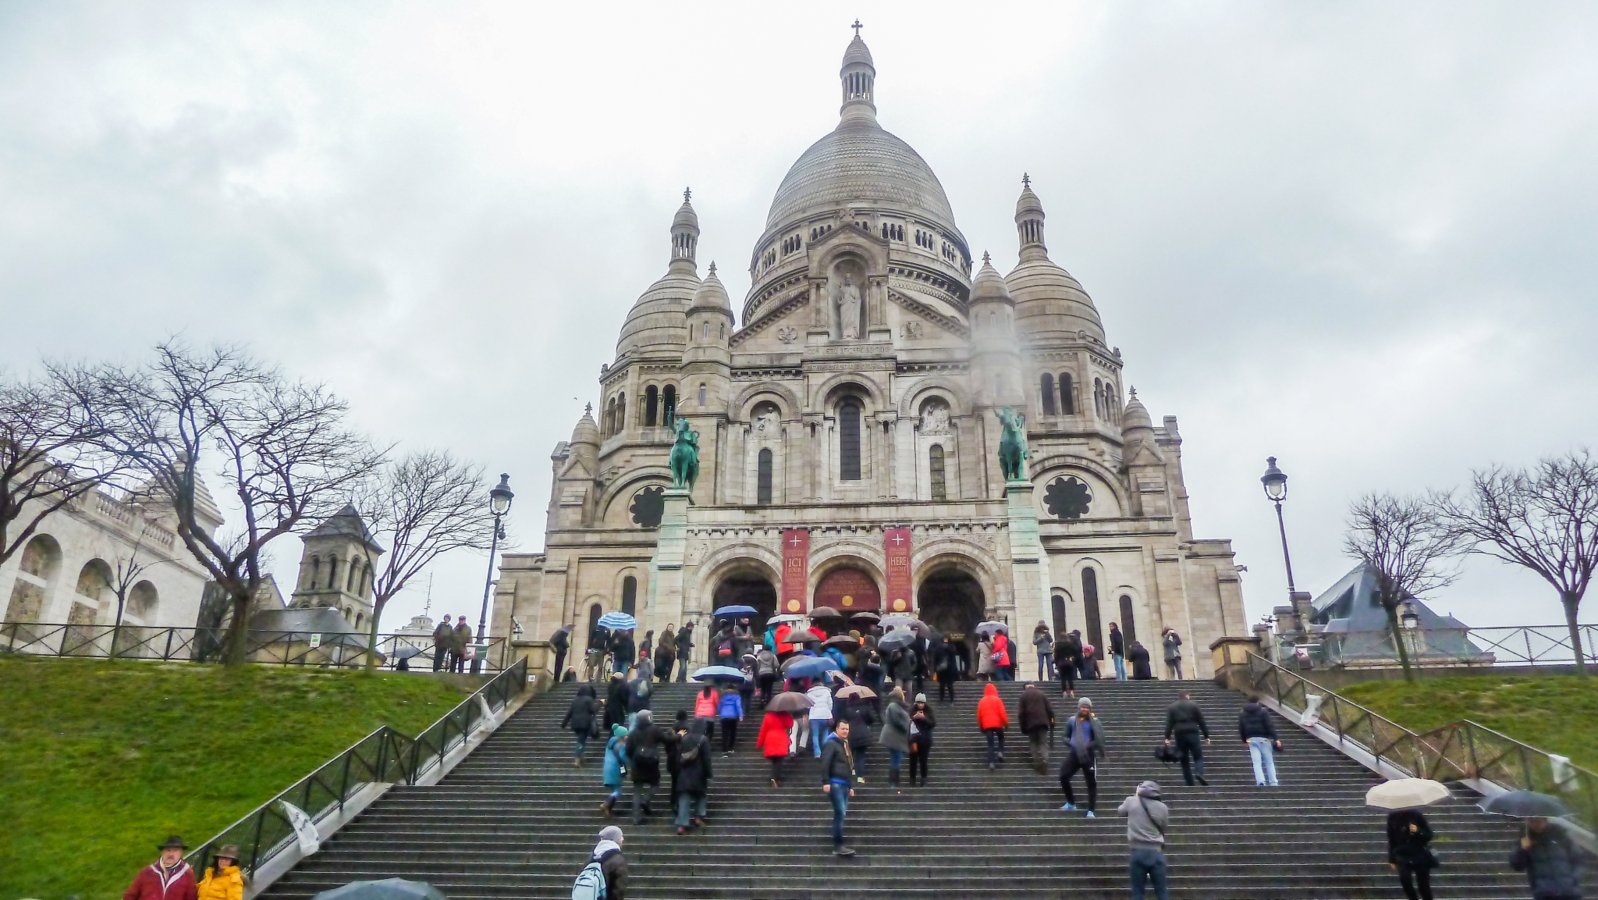 Basilique du Sacré-Cœur - Montmartre